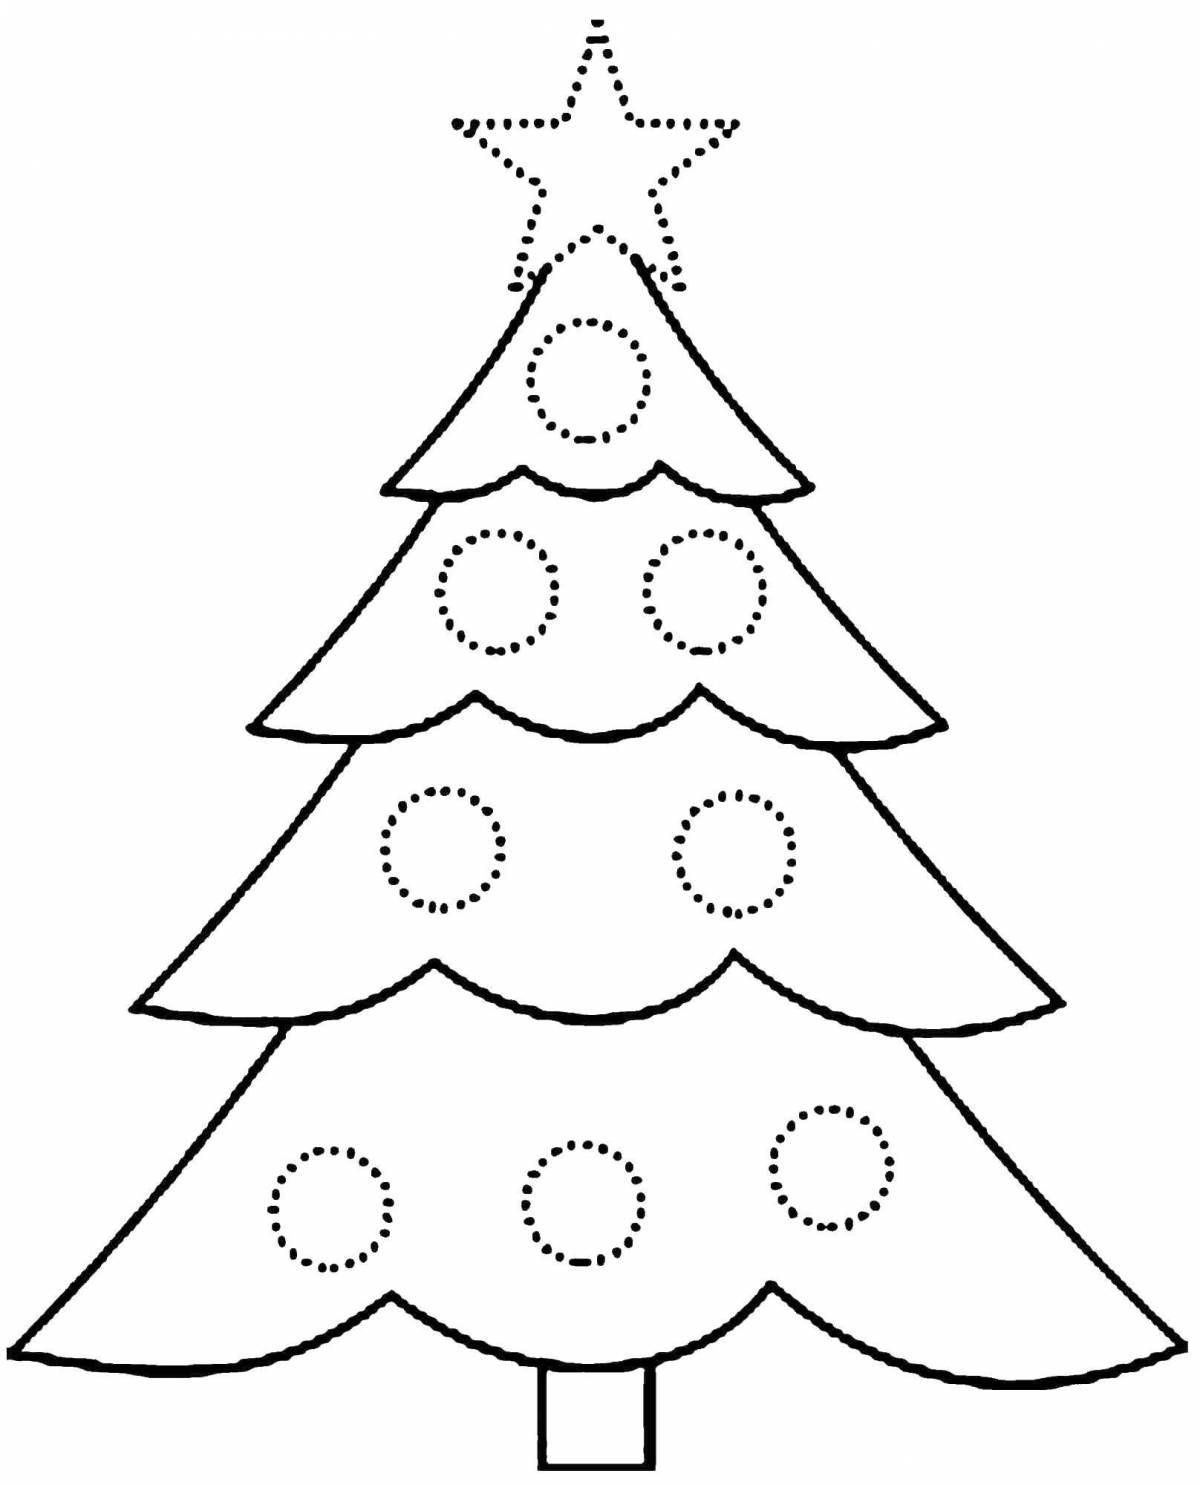 Раскраска праздничная новогодняя елка для детей 3-4 лет